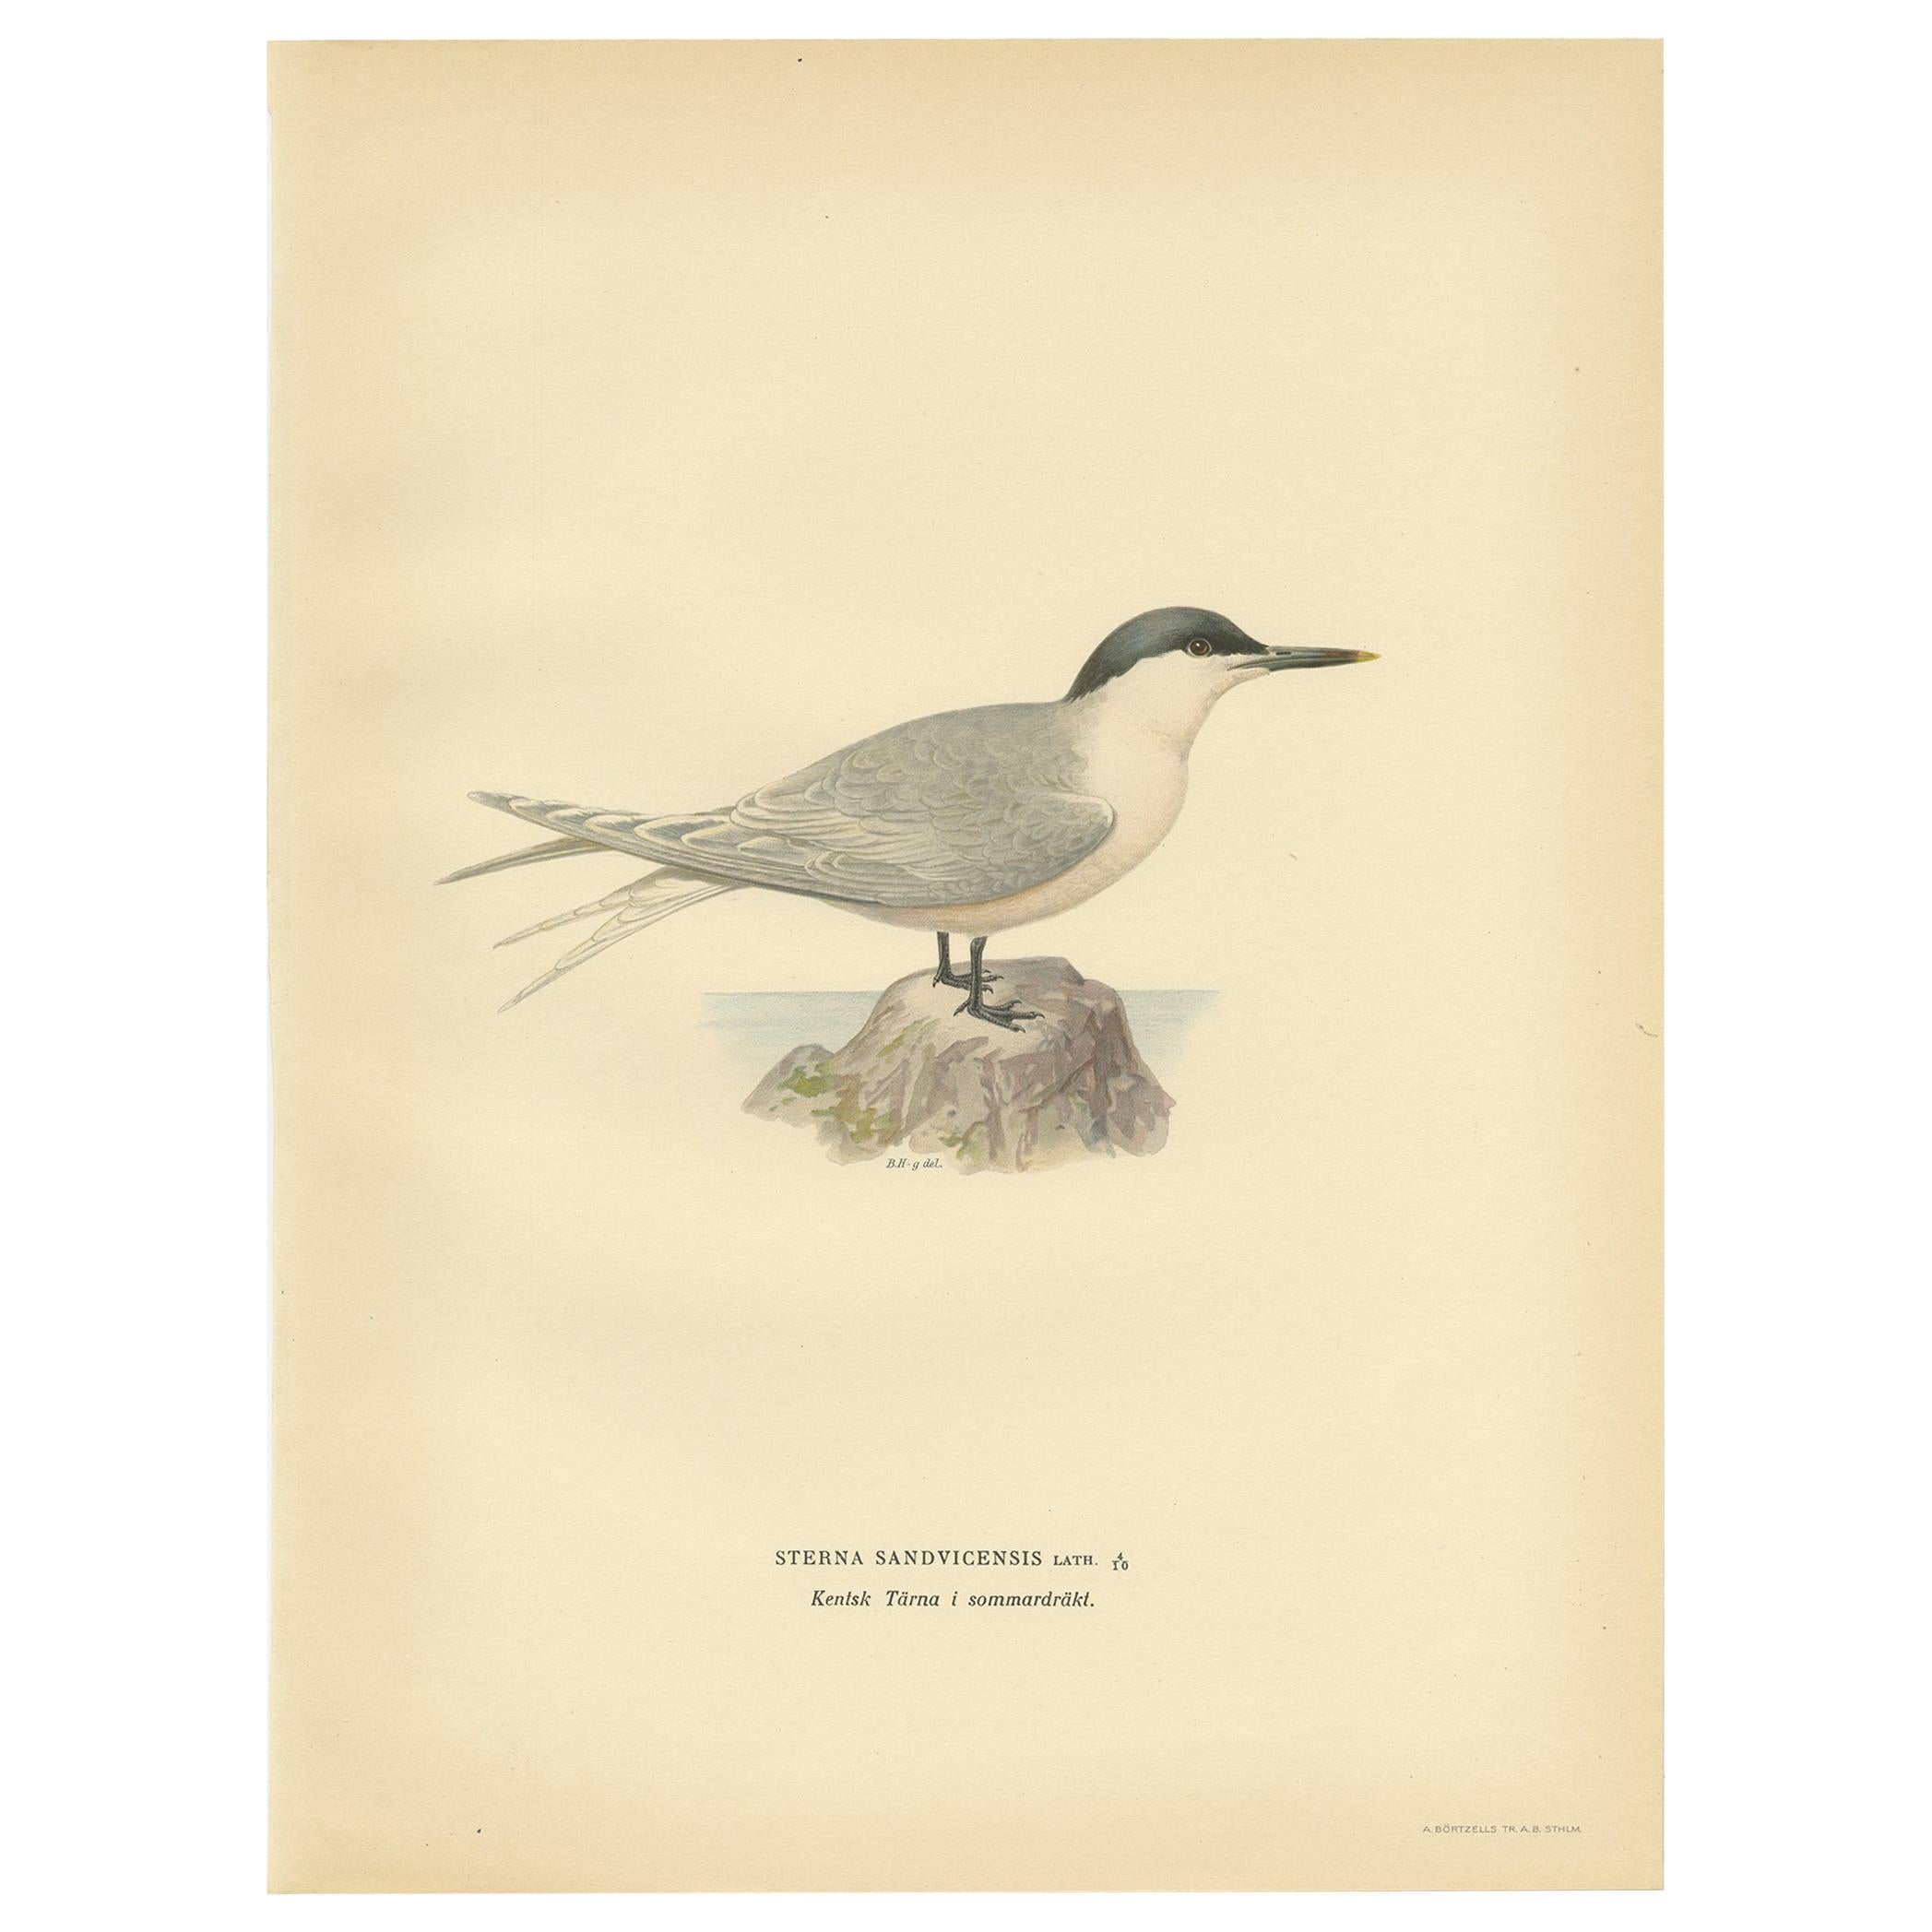 Antique Bird Print of the Sandwich Tern 'summer' by Von Wright, 1929